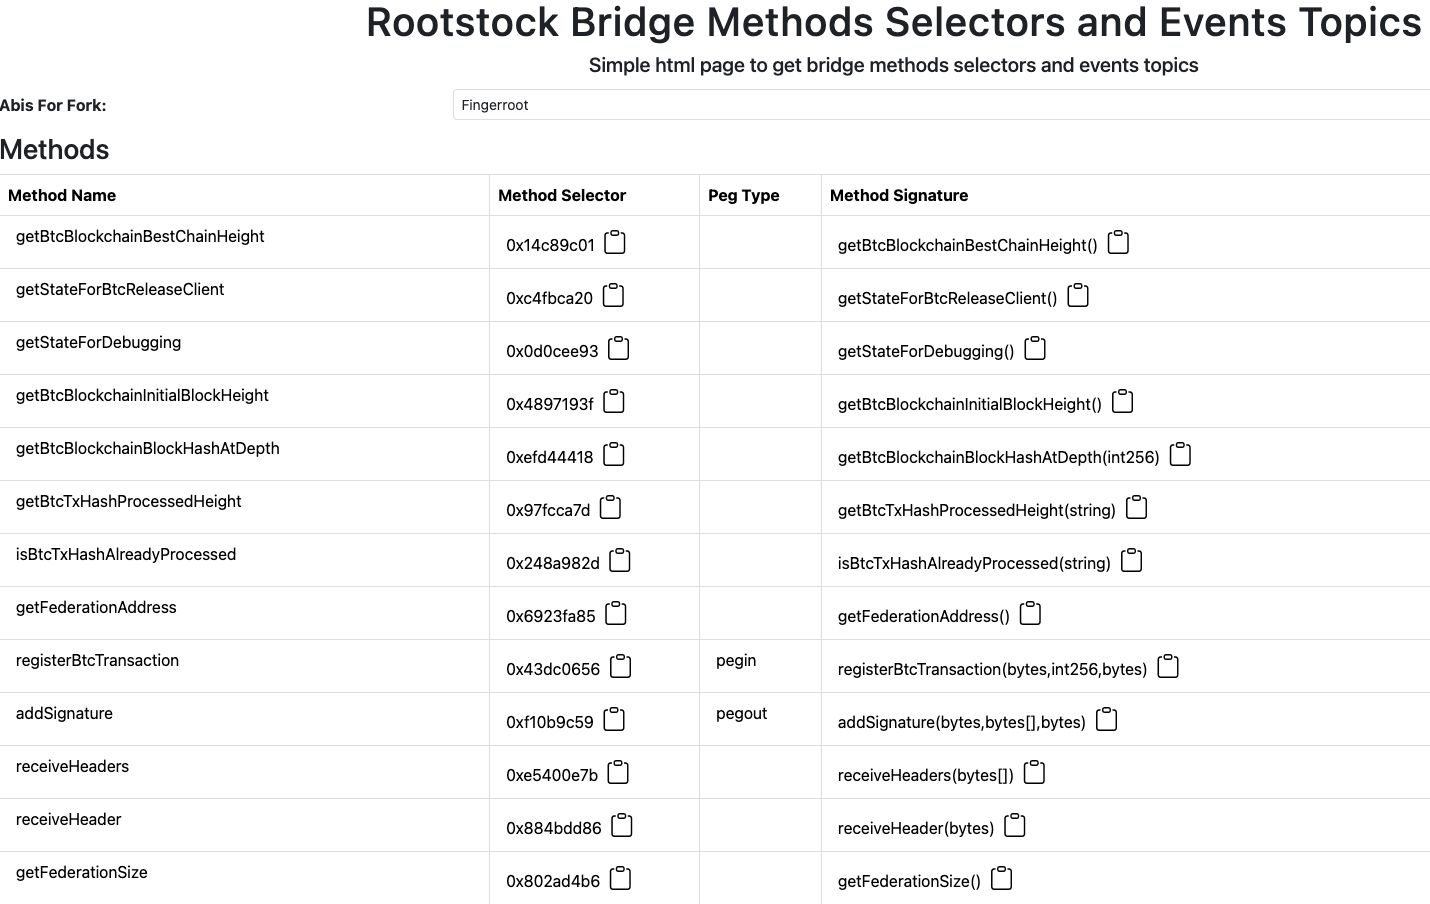 Rootstock bridge abis methods